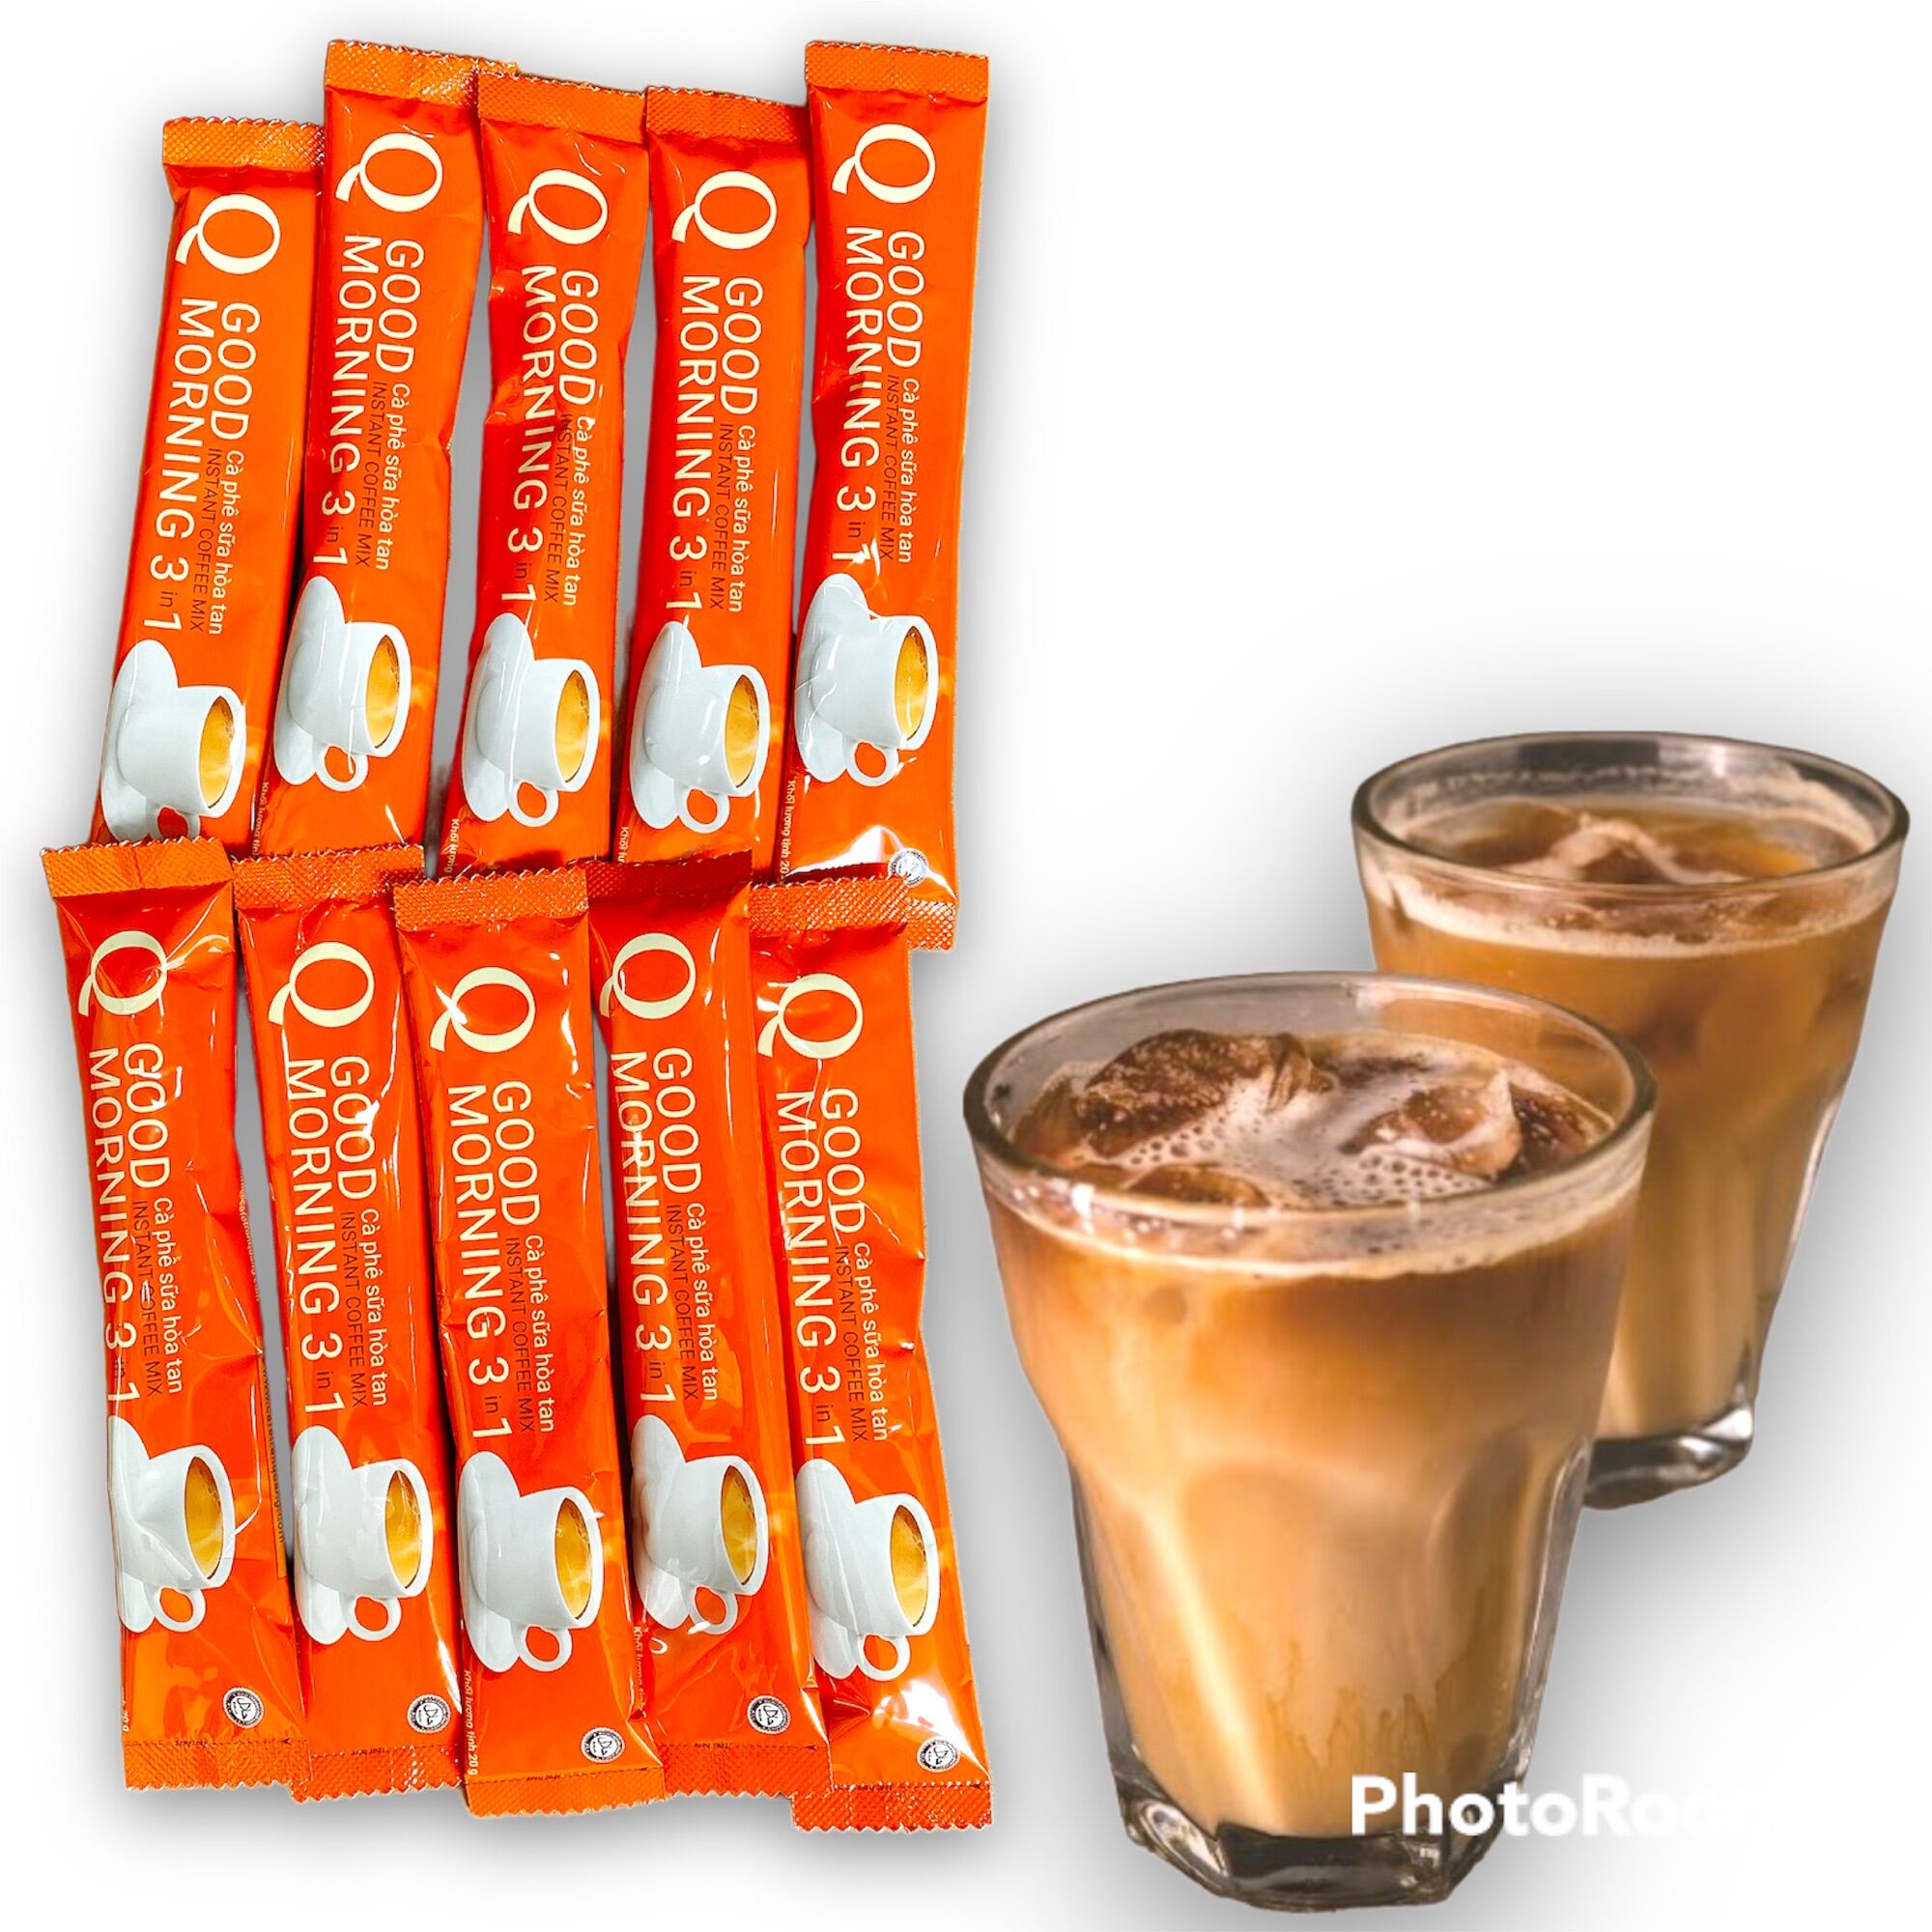 [UỐNG LÀ GHIỀN] Combo 50 gói Cà phê sữa Q Good Morning Trần Quang vị truyền thống (Mỗi gói 20gram) -Có lựa chọn số lượng trước khi thanh toán - (Date mới 12 tháng)-[ 12.12 Hot Deals ]